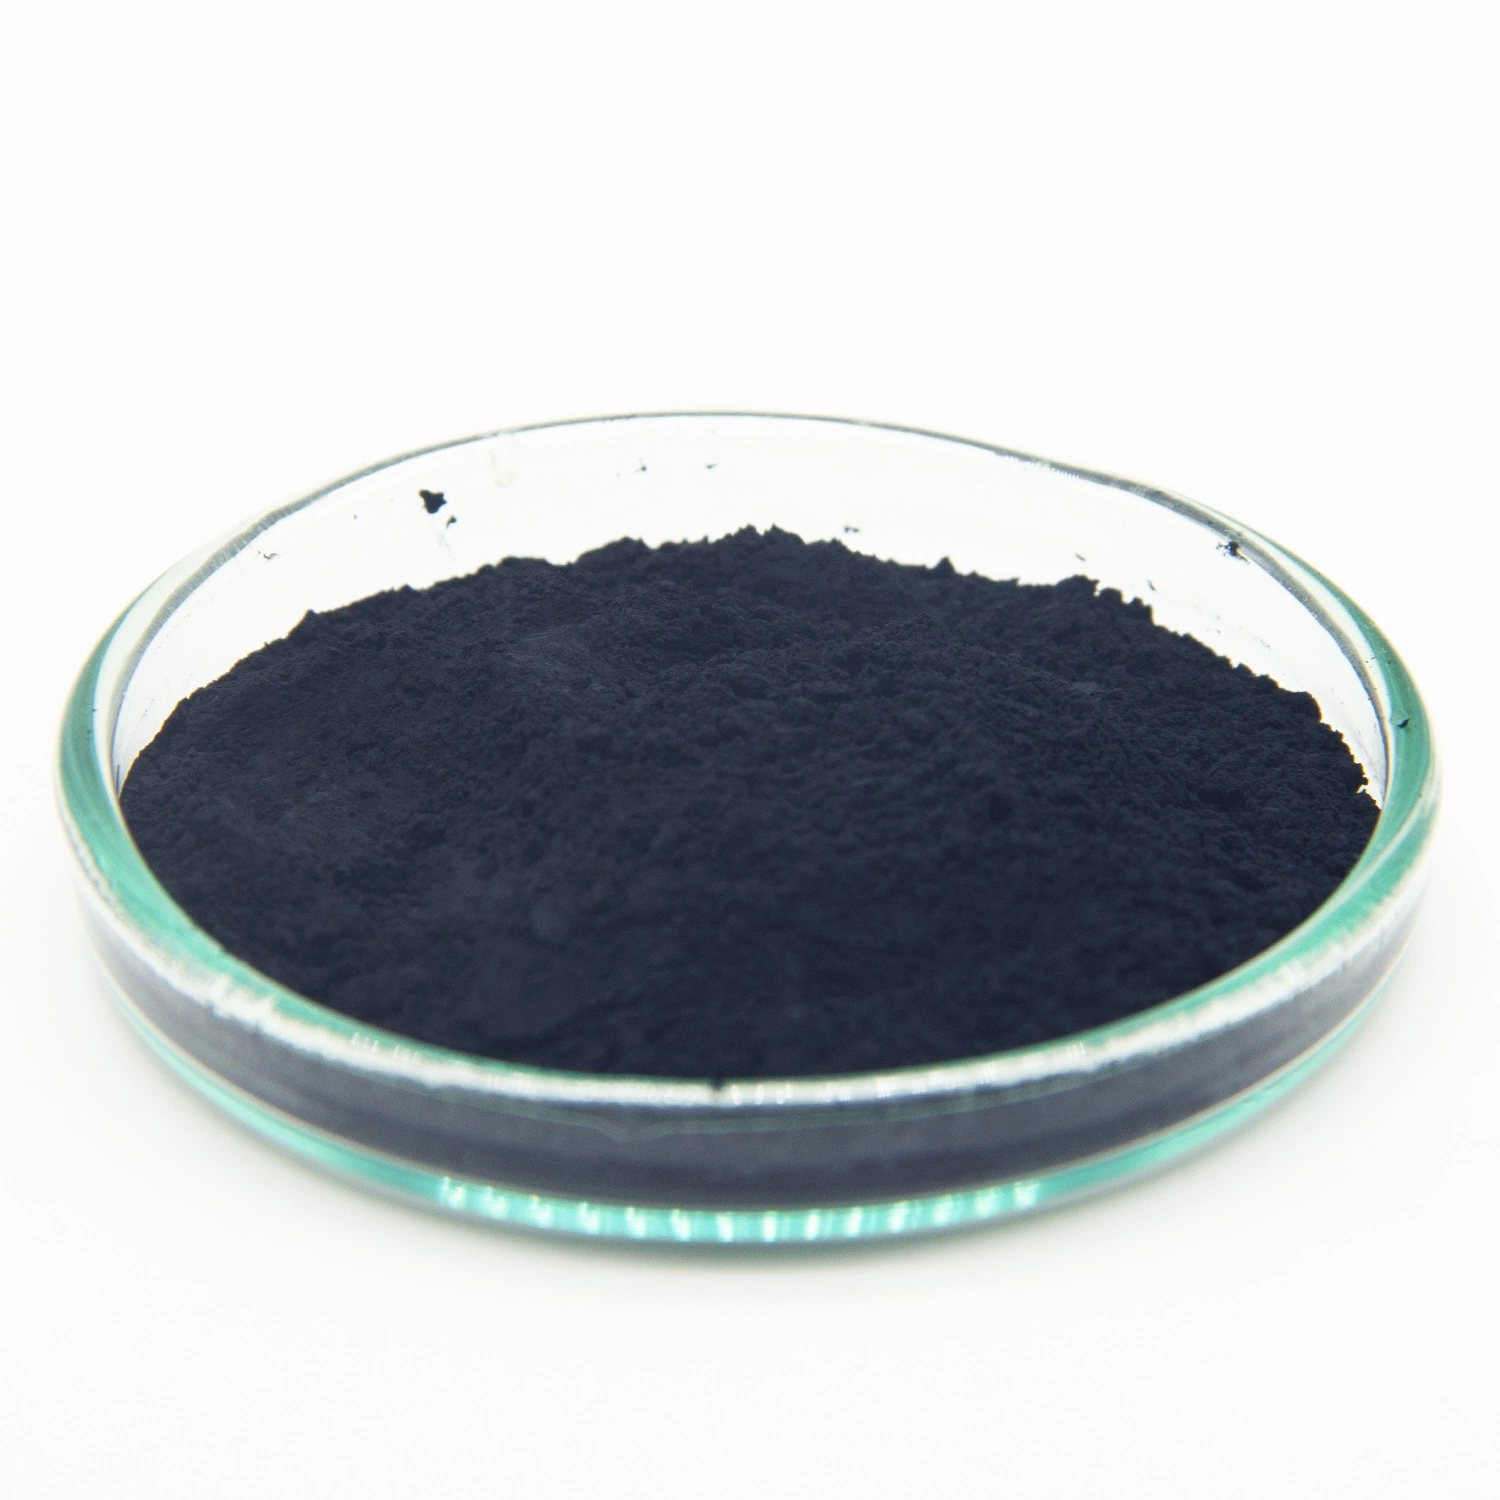 Materiales aislantes grises negros y materiales magnéticos óxido de cobalto